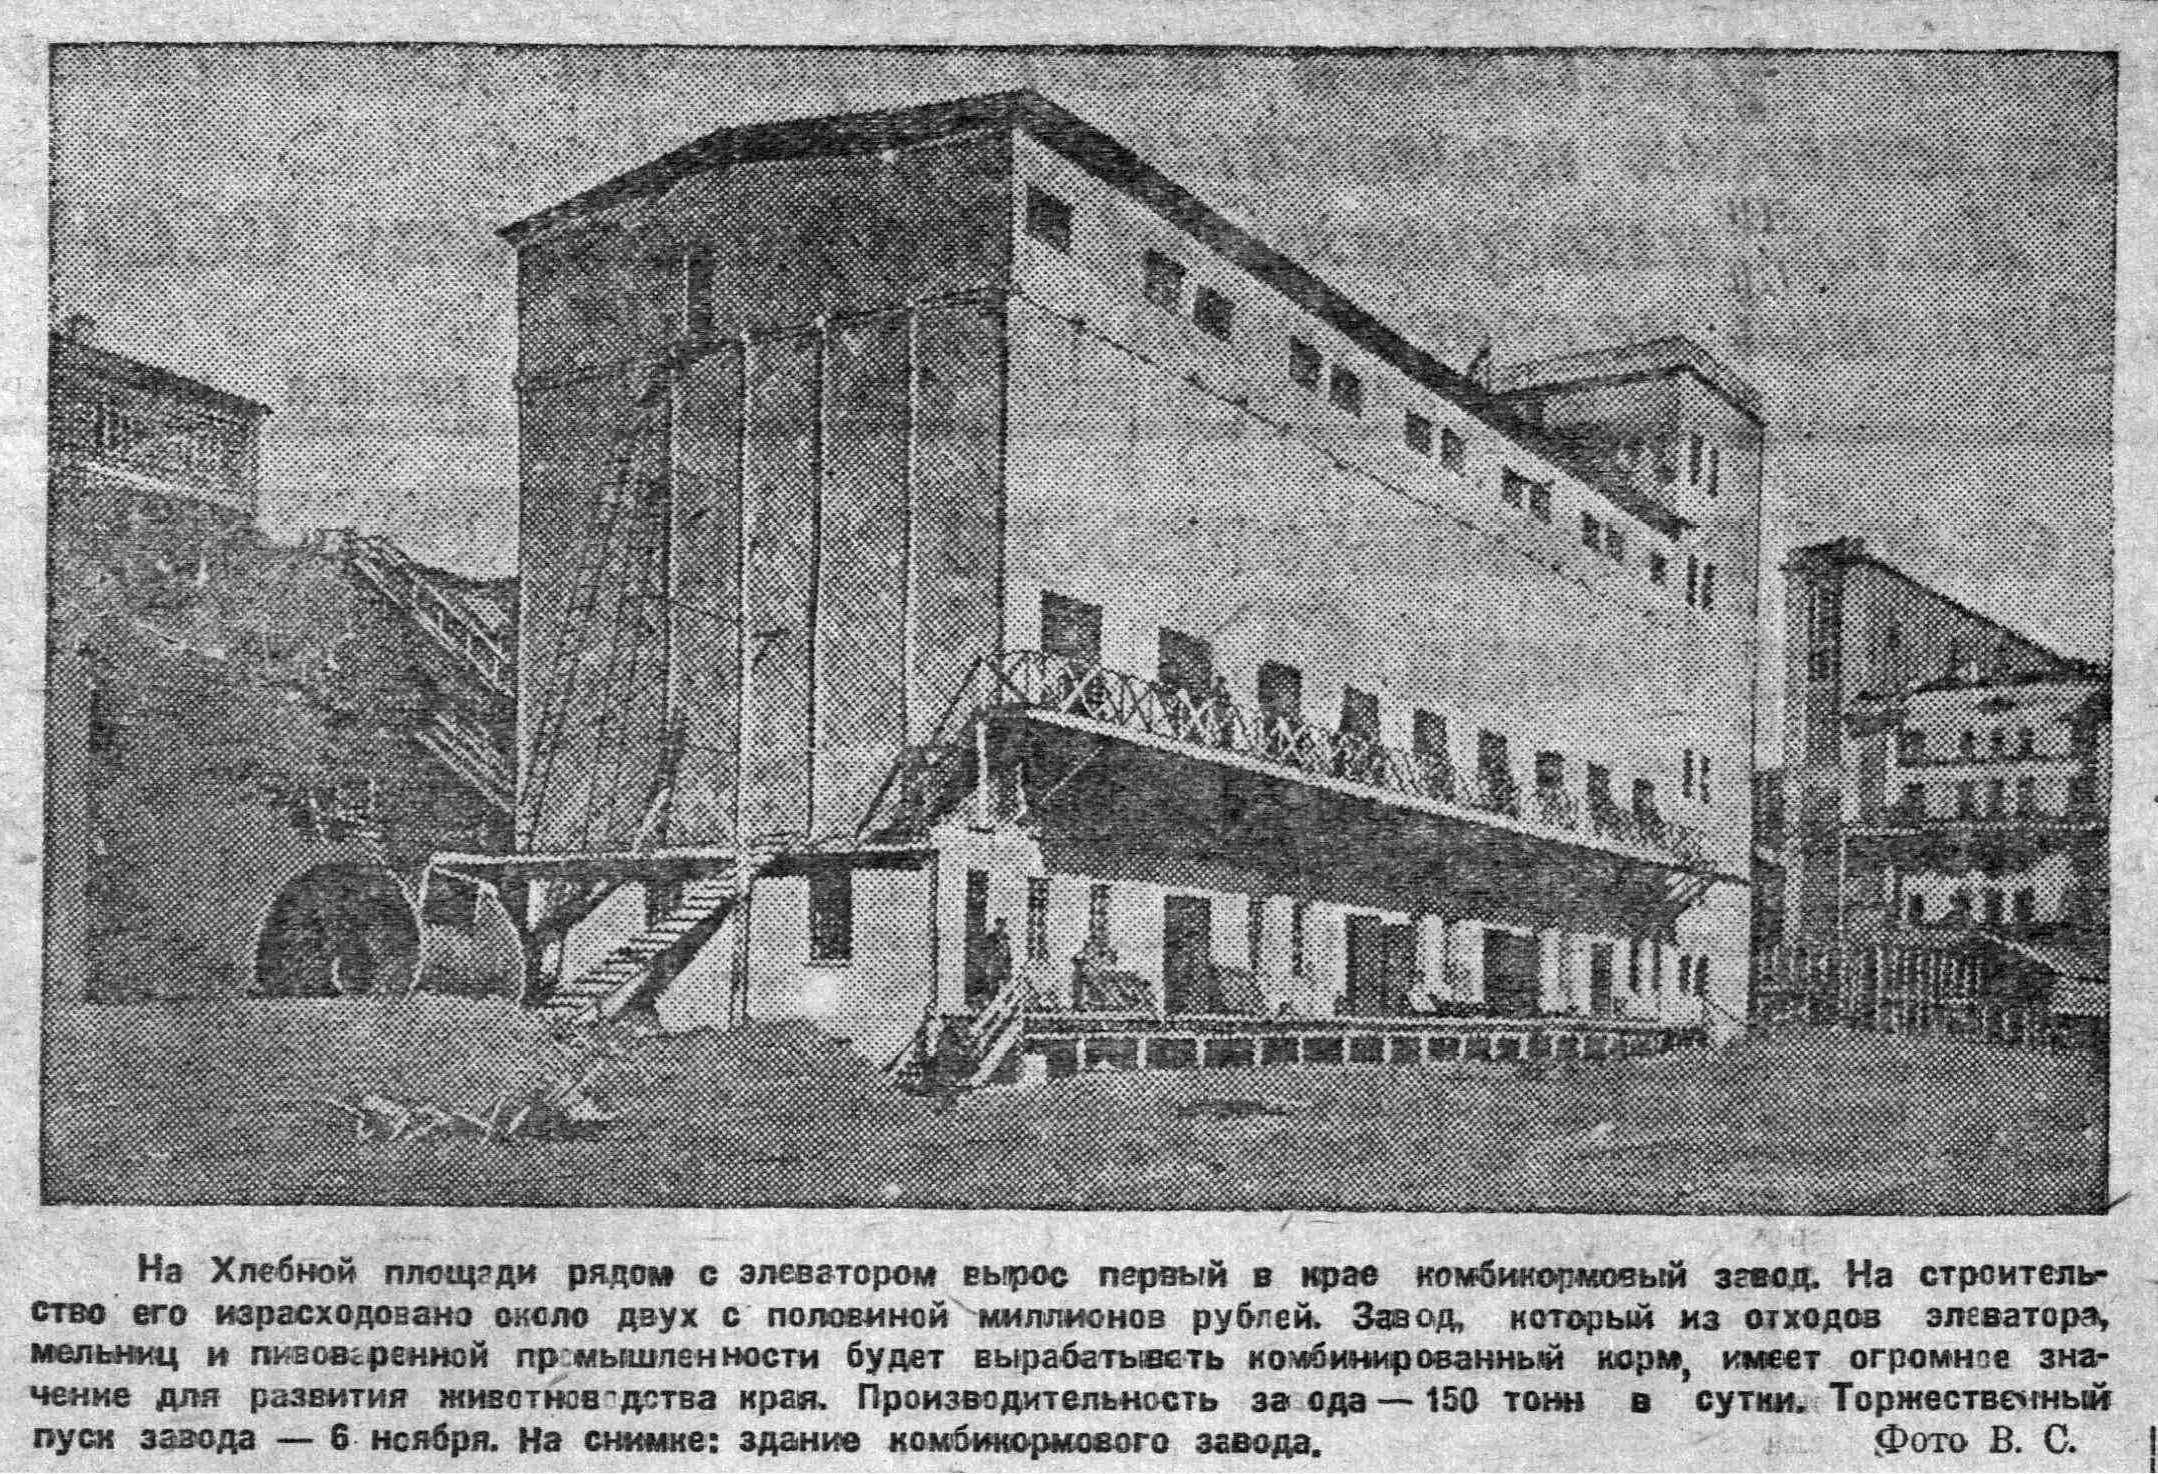 Ноябрь 1935 года -- открытие комбикормового завода